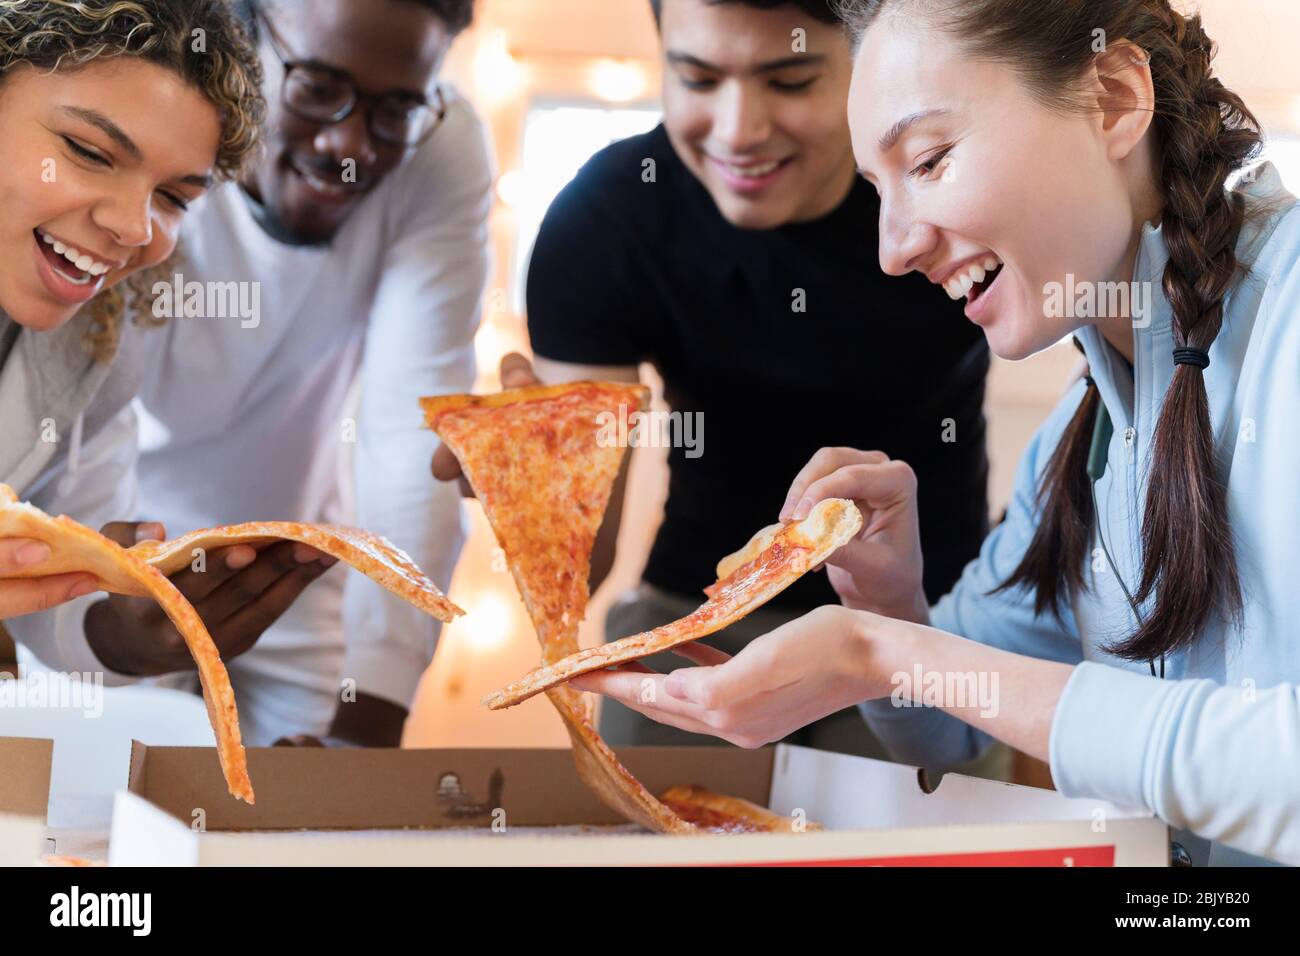 Gruppe von Freunden, die zusammen Pizza essen Stockfoto